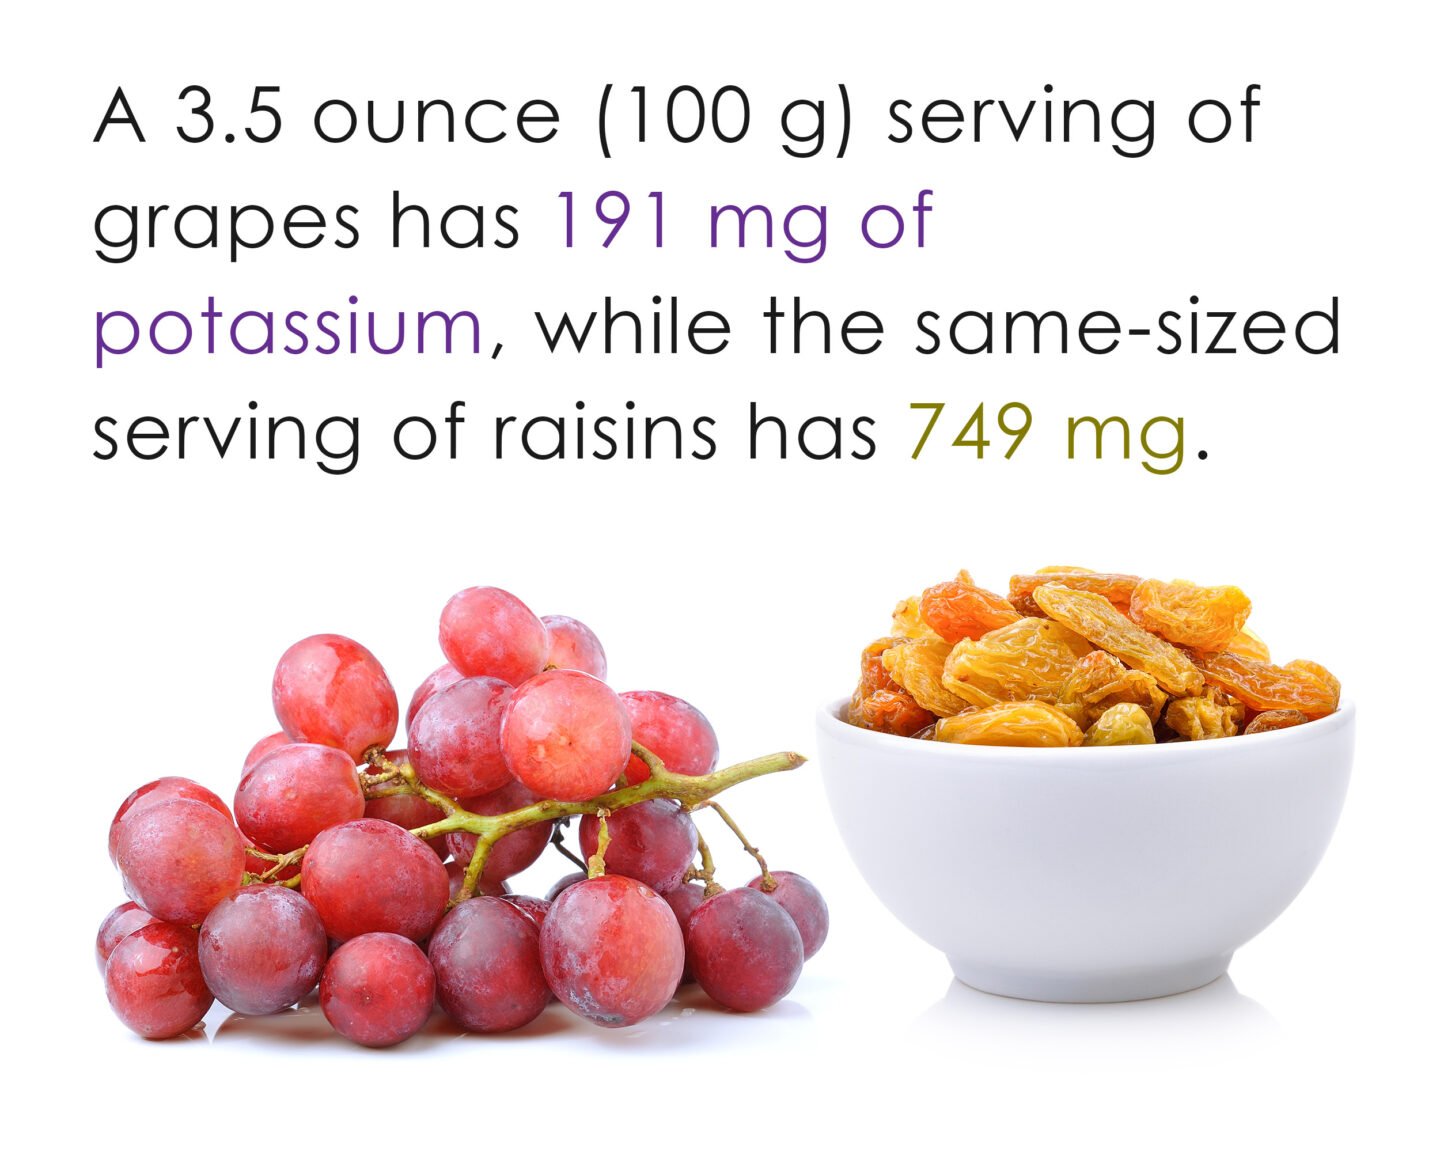 potassium in grapes and raisins